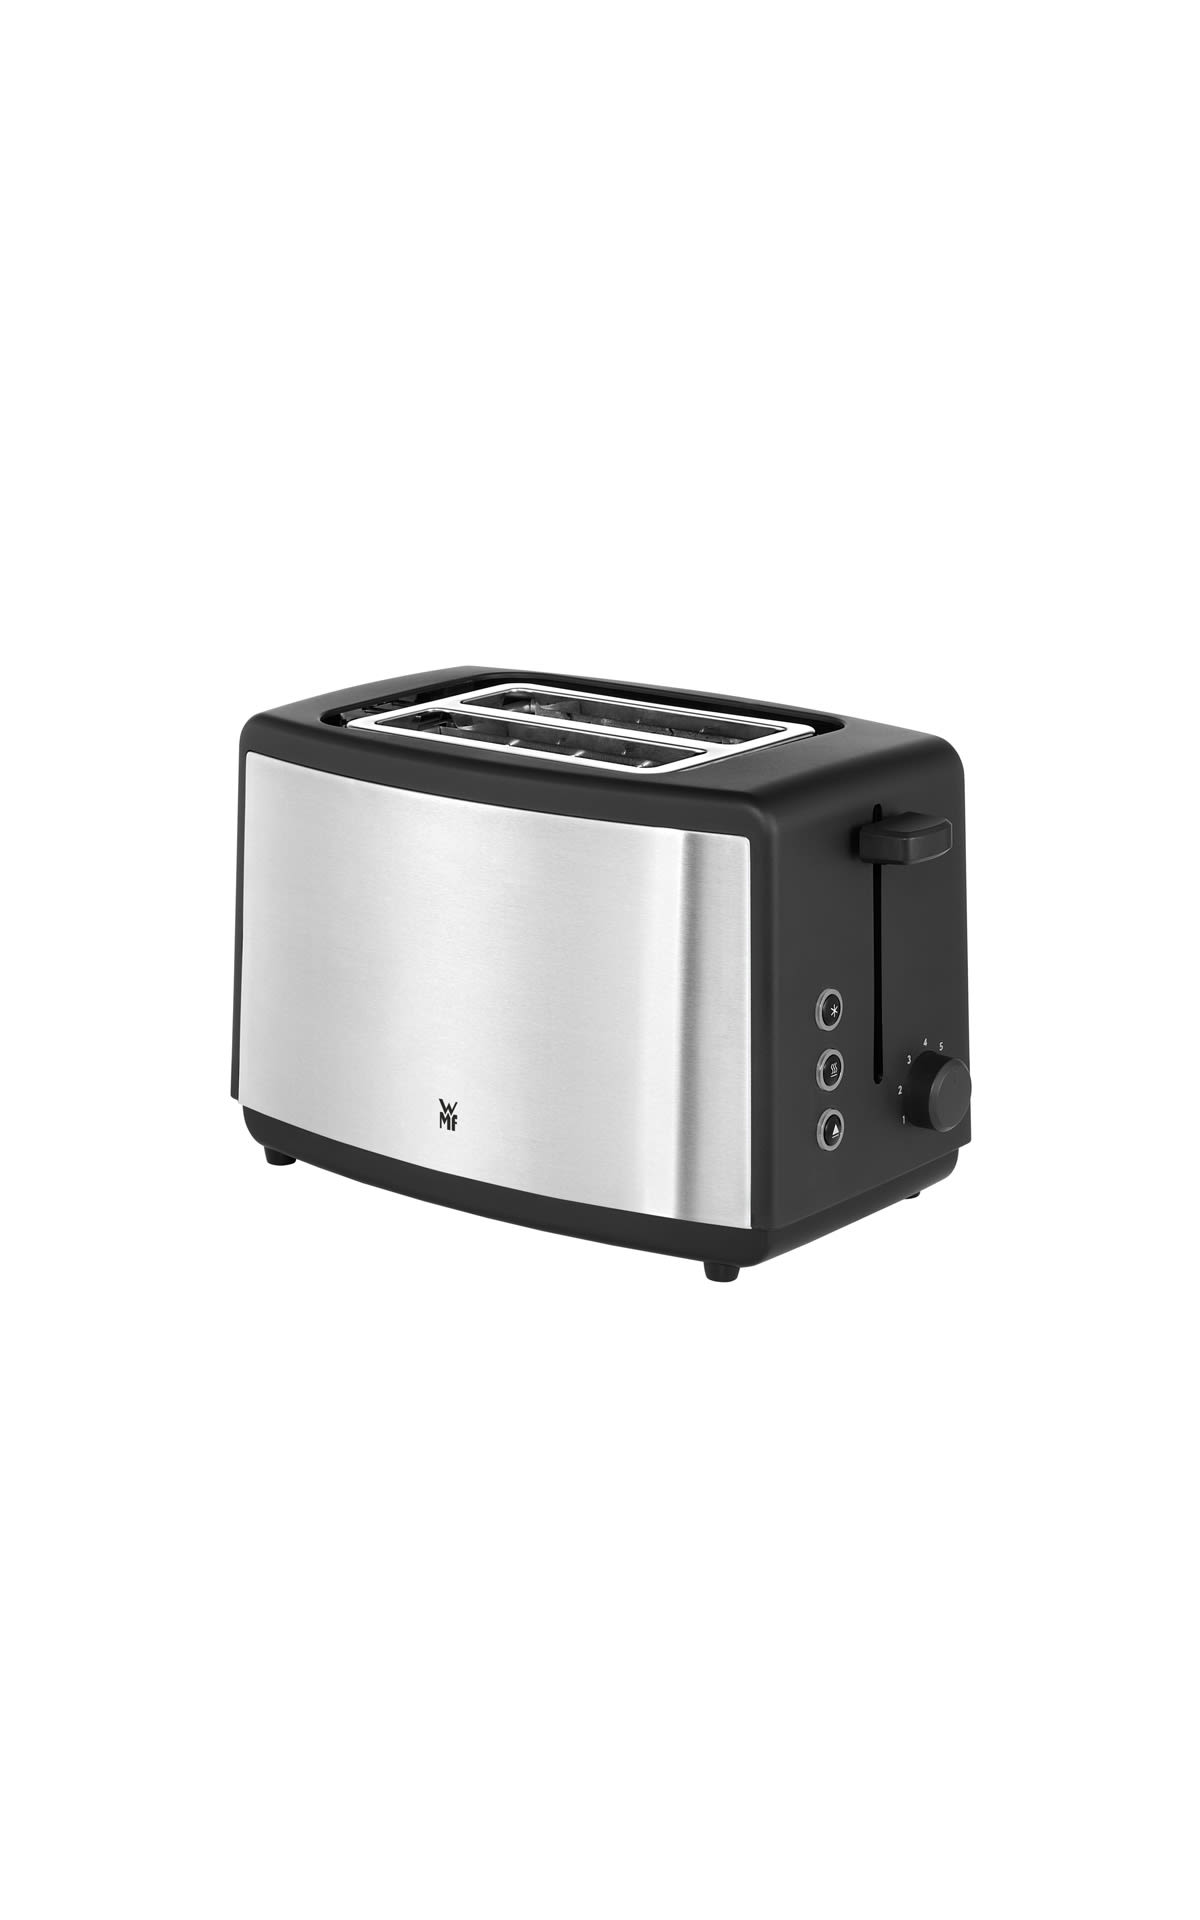 Wmf toaster